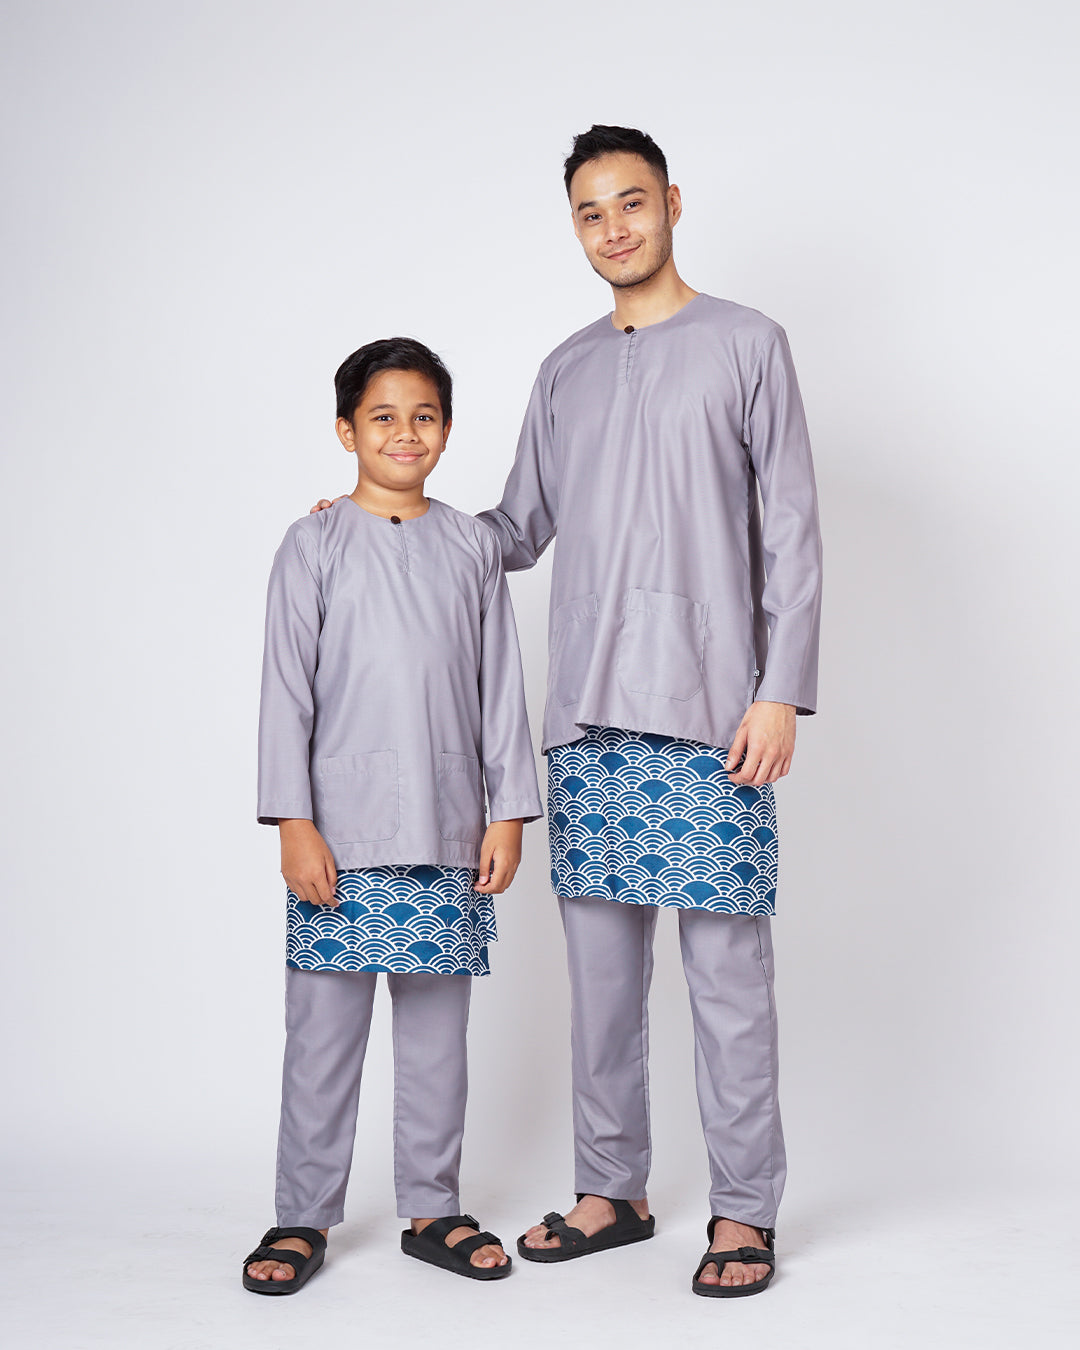 Bangsawan Baju Melayu Set Kids - SILVER